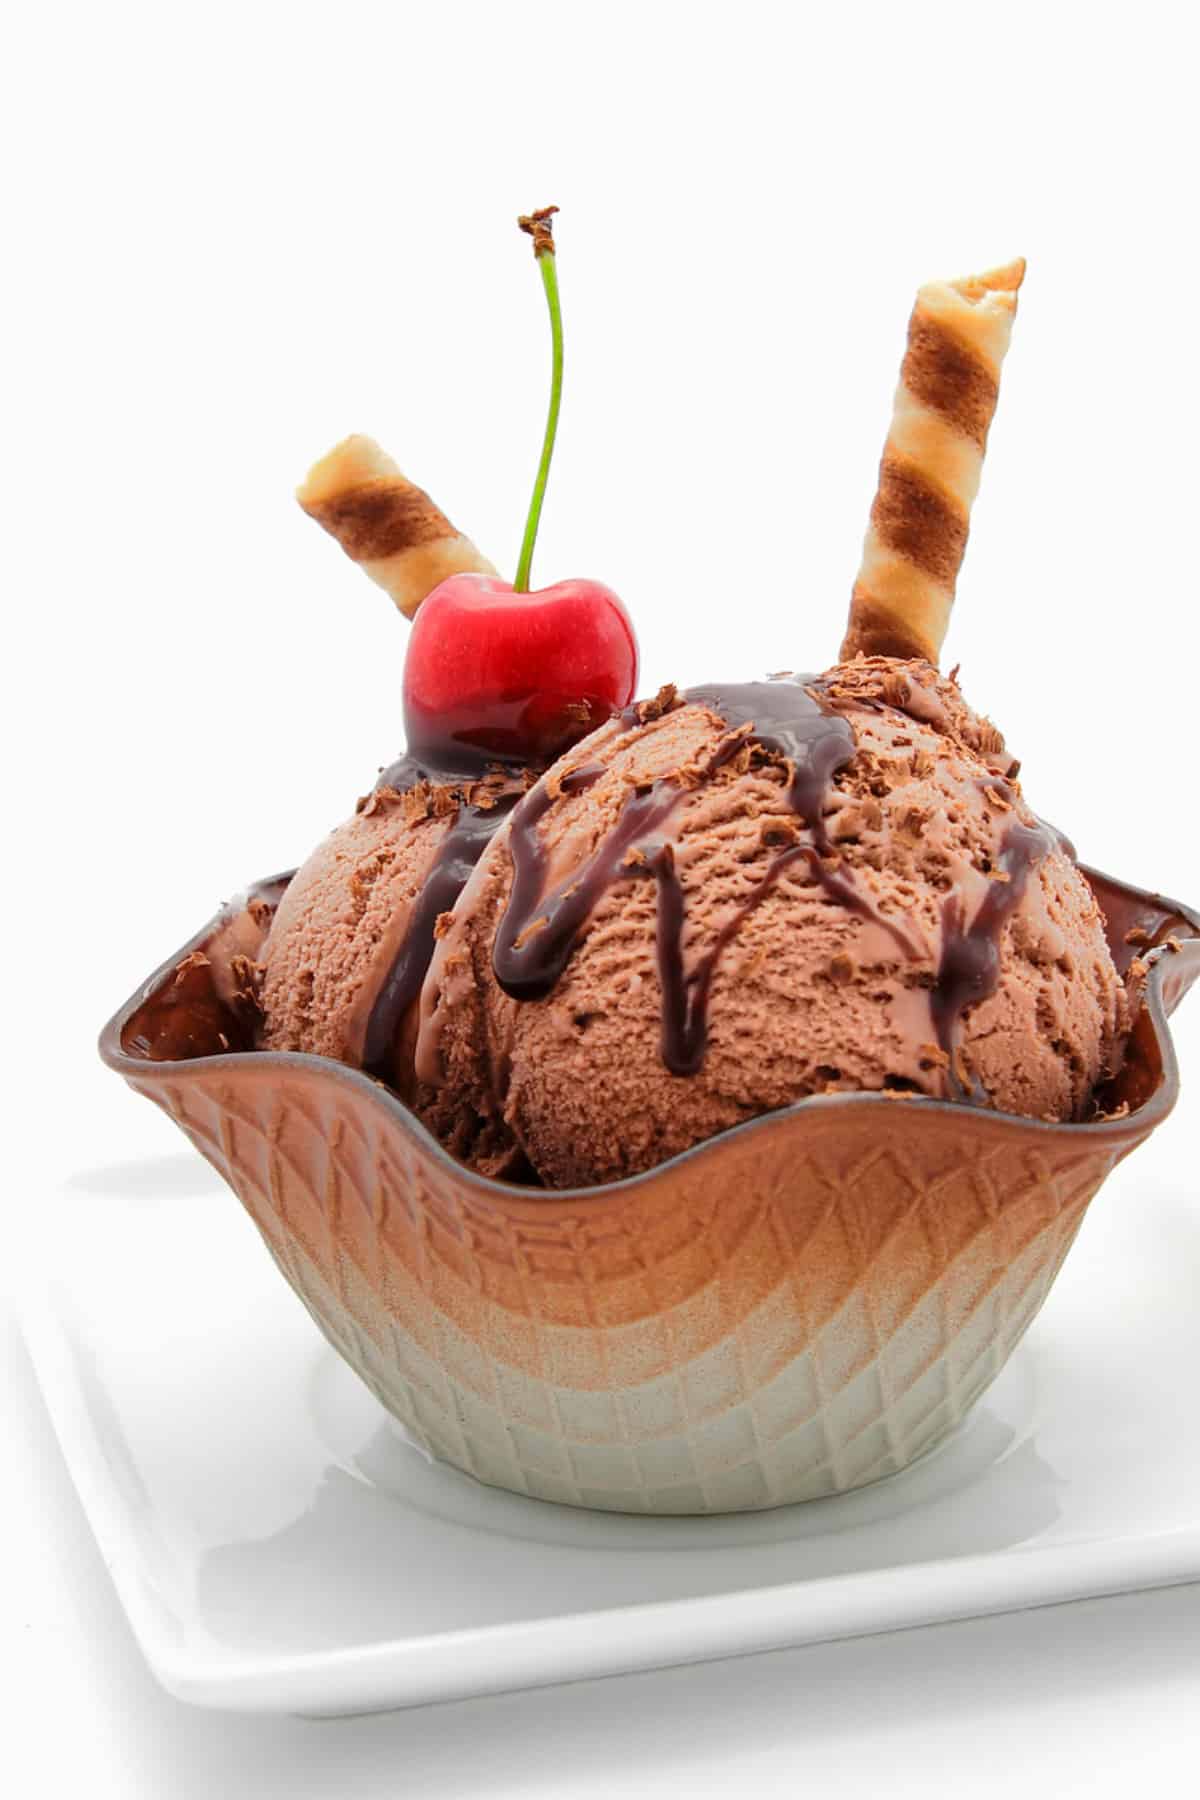 Homemade chocolate cream gelato